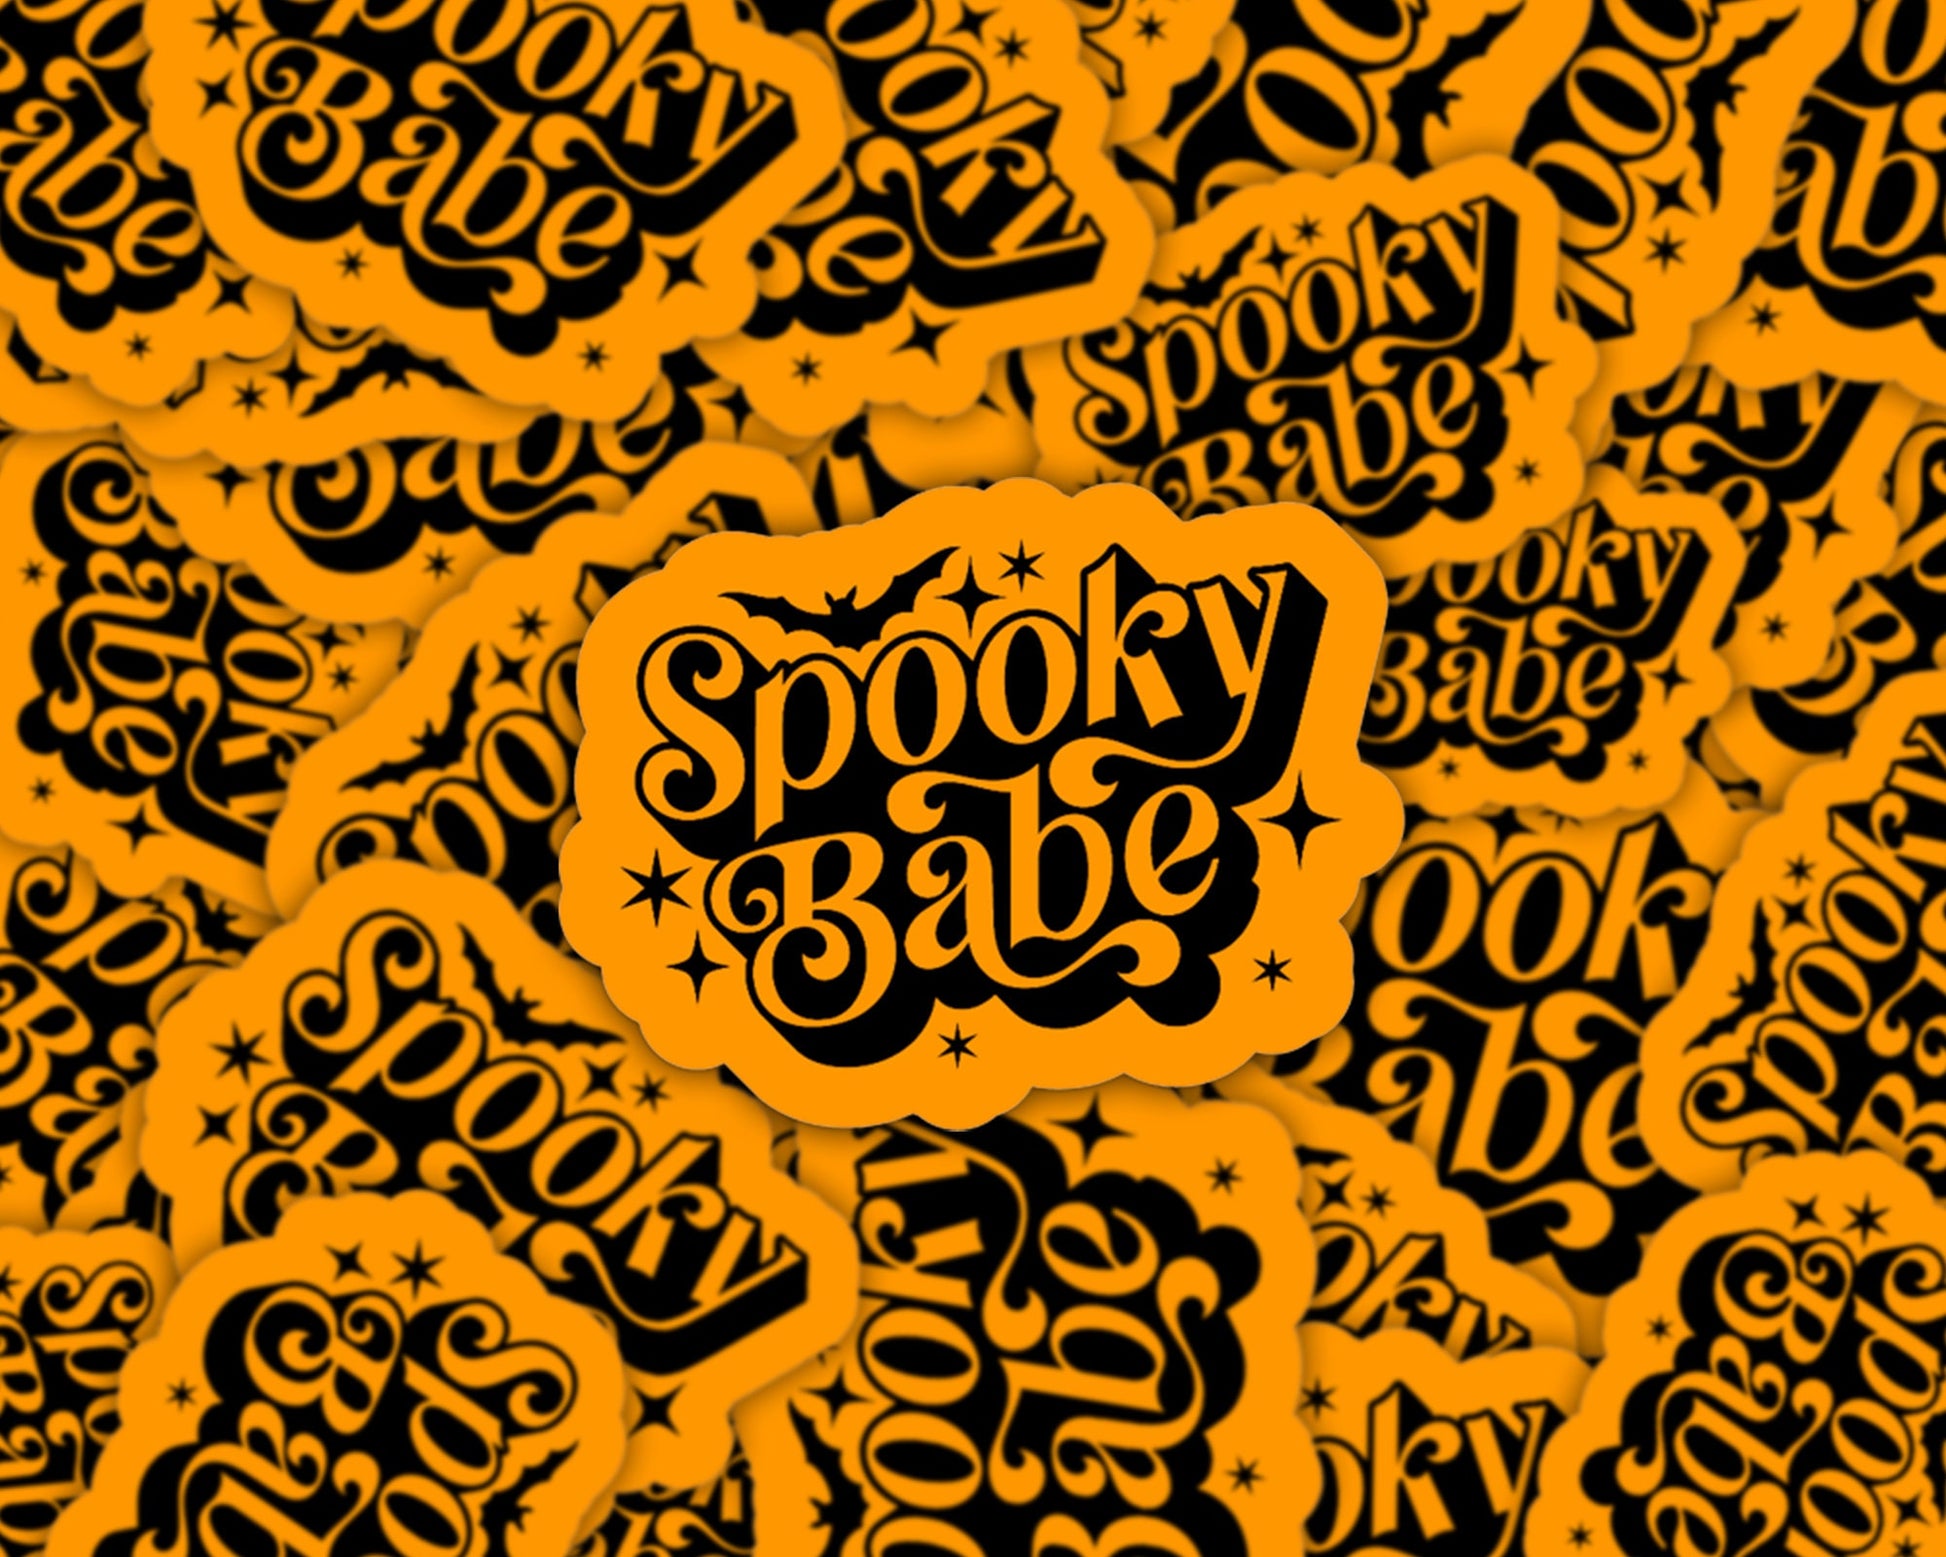 halloween sticker, spooky babe, spooky stickers, halloween gift, halloween unique, halloween party, halloween lovers, halloween prizes